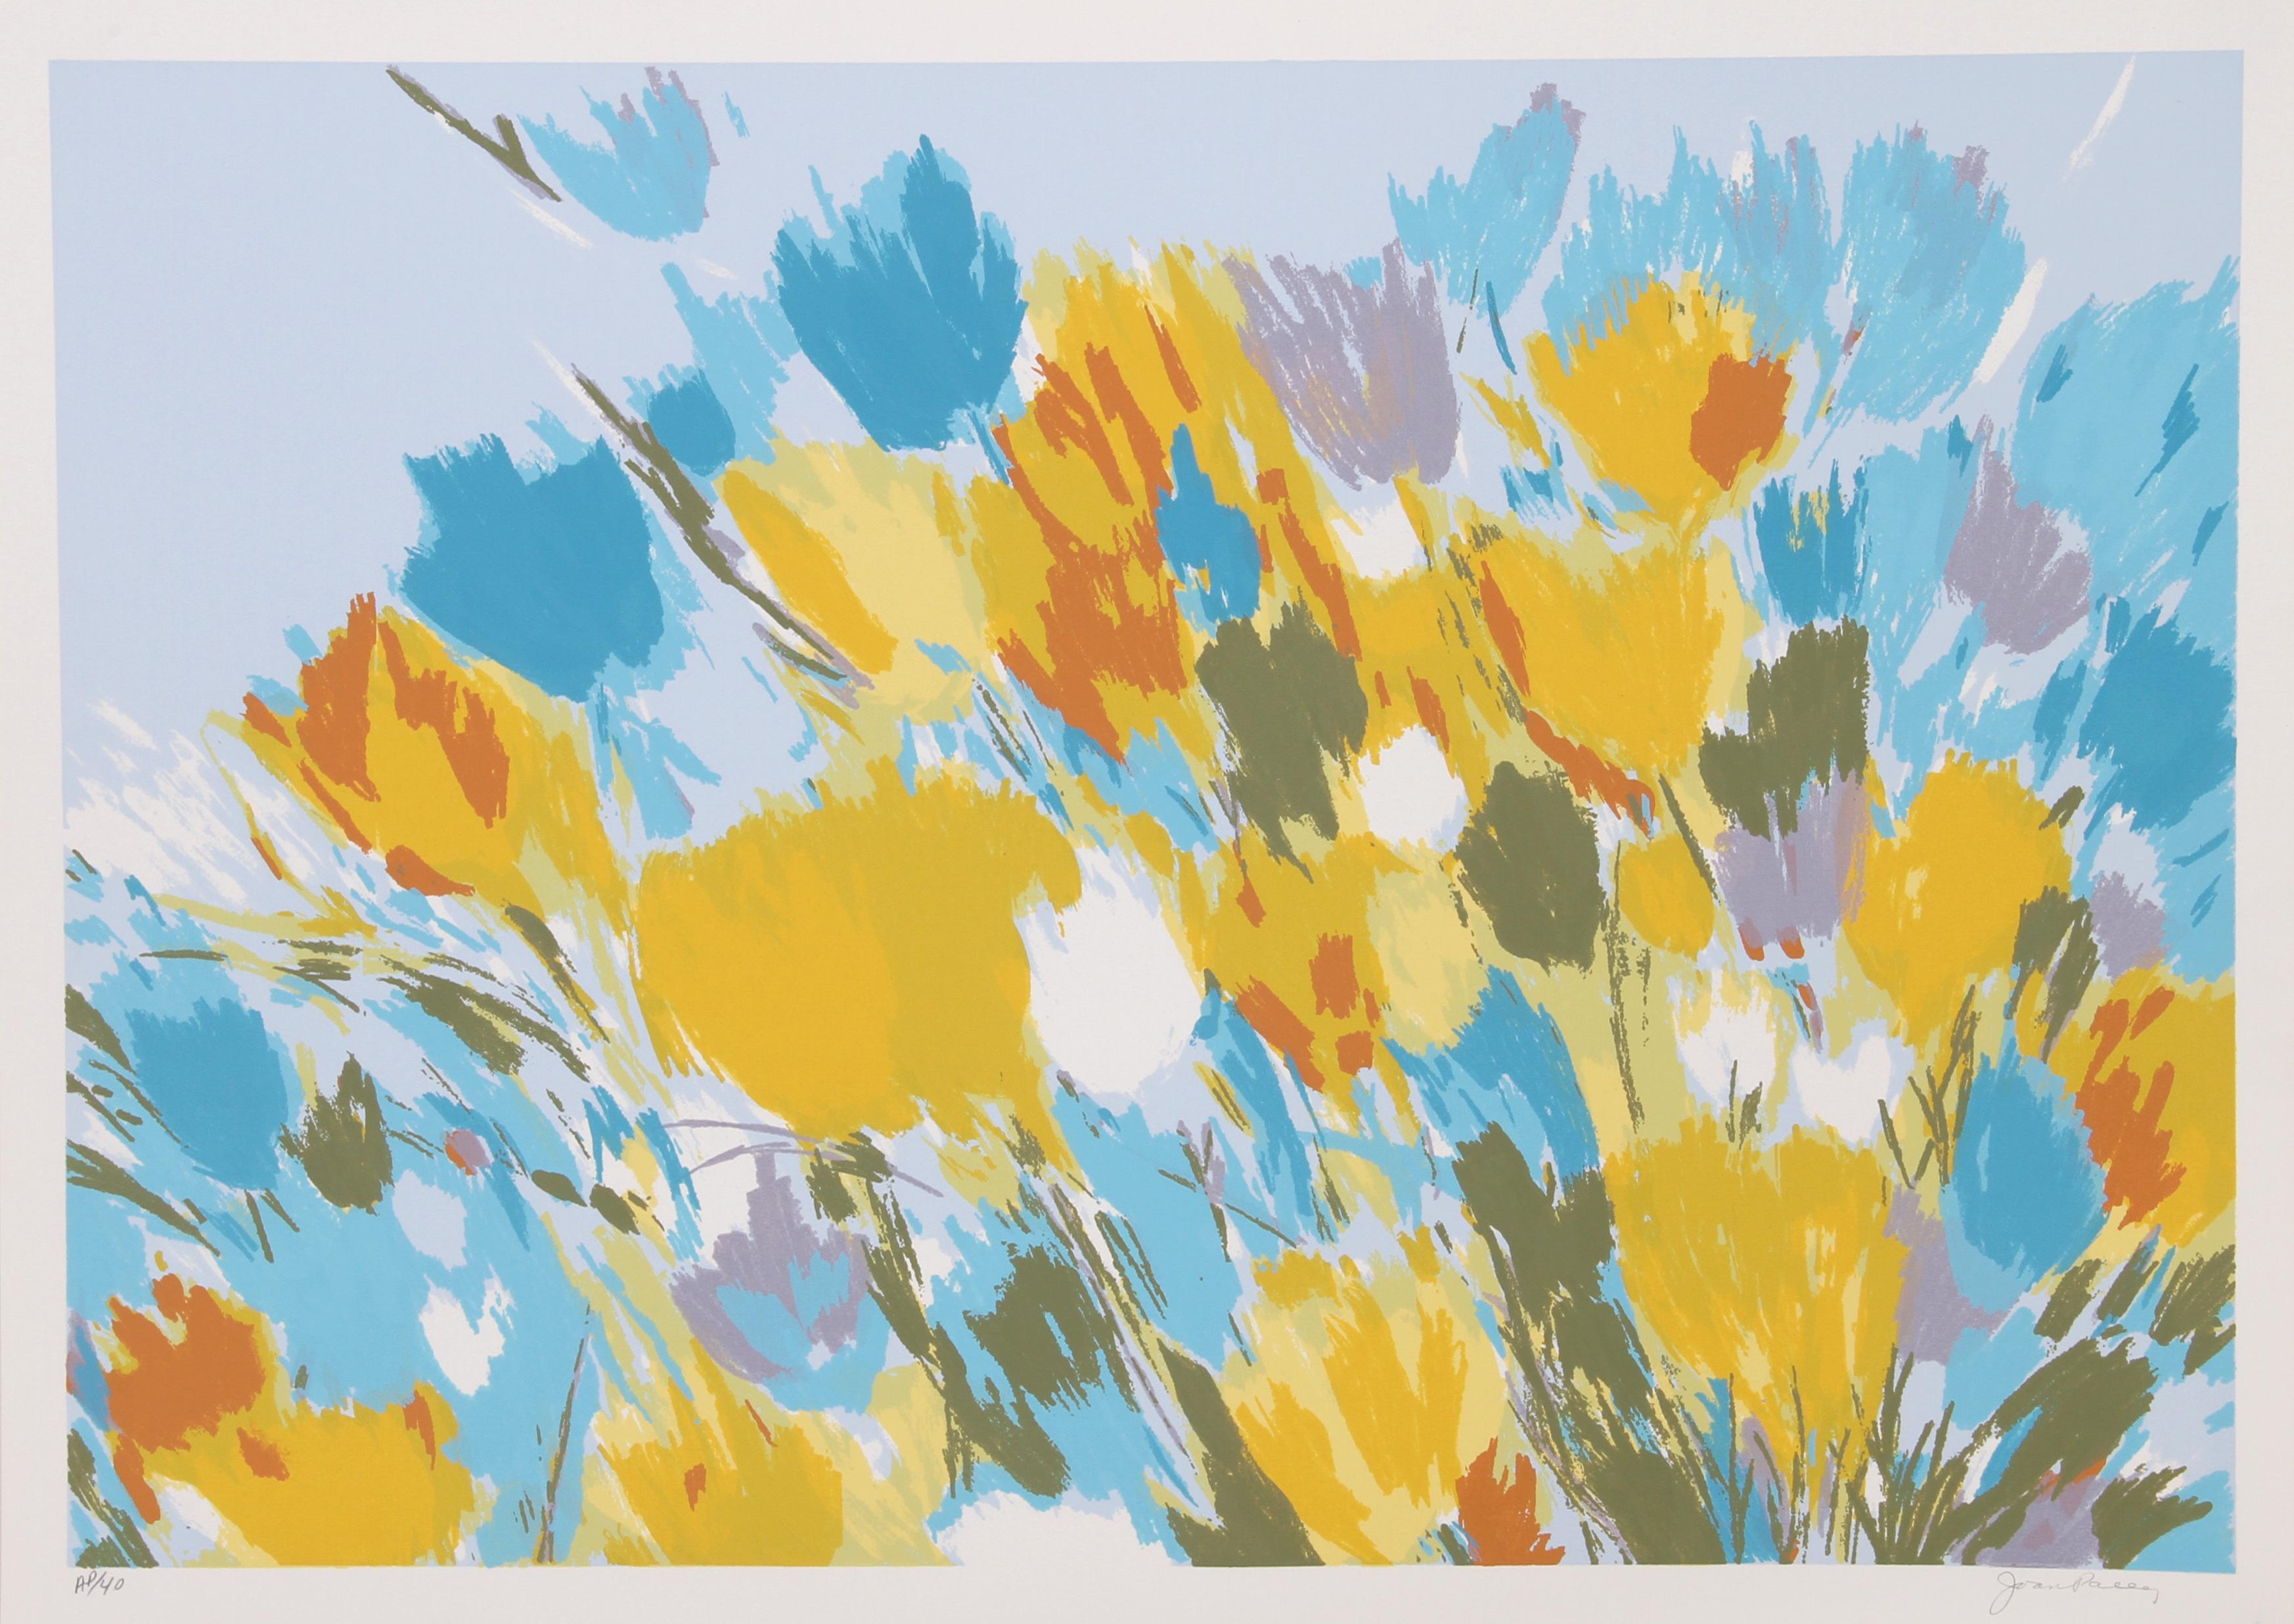 Künstler:  Joan Paley
Titel:  Vorfrühling
Jahr:  um 1979
Medium:  Lithographie, mit Bleistift signiert und nummeriert
Auflage:  AP 40
Bildgröße:  19 x 27,5 Zoll
Größe:  22 Zoll x 30 Zoll (55,88 cm x 76,2 cm)